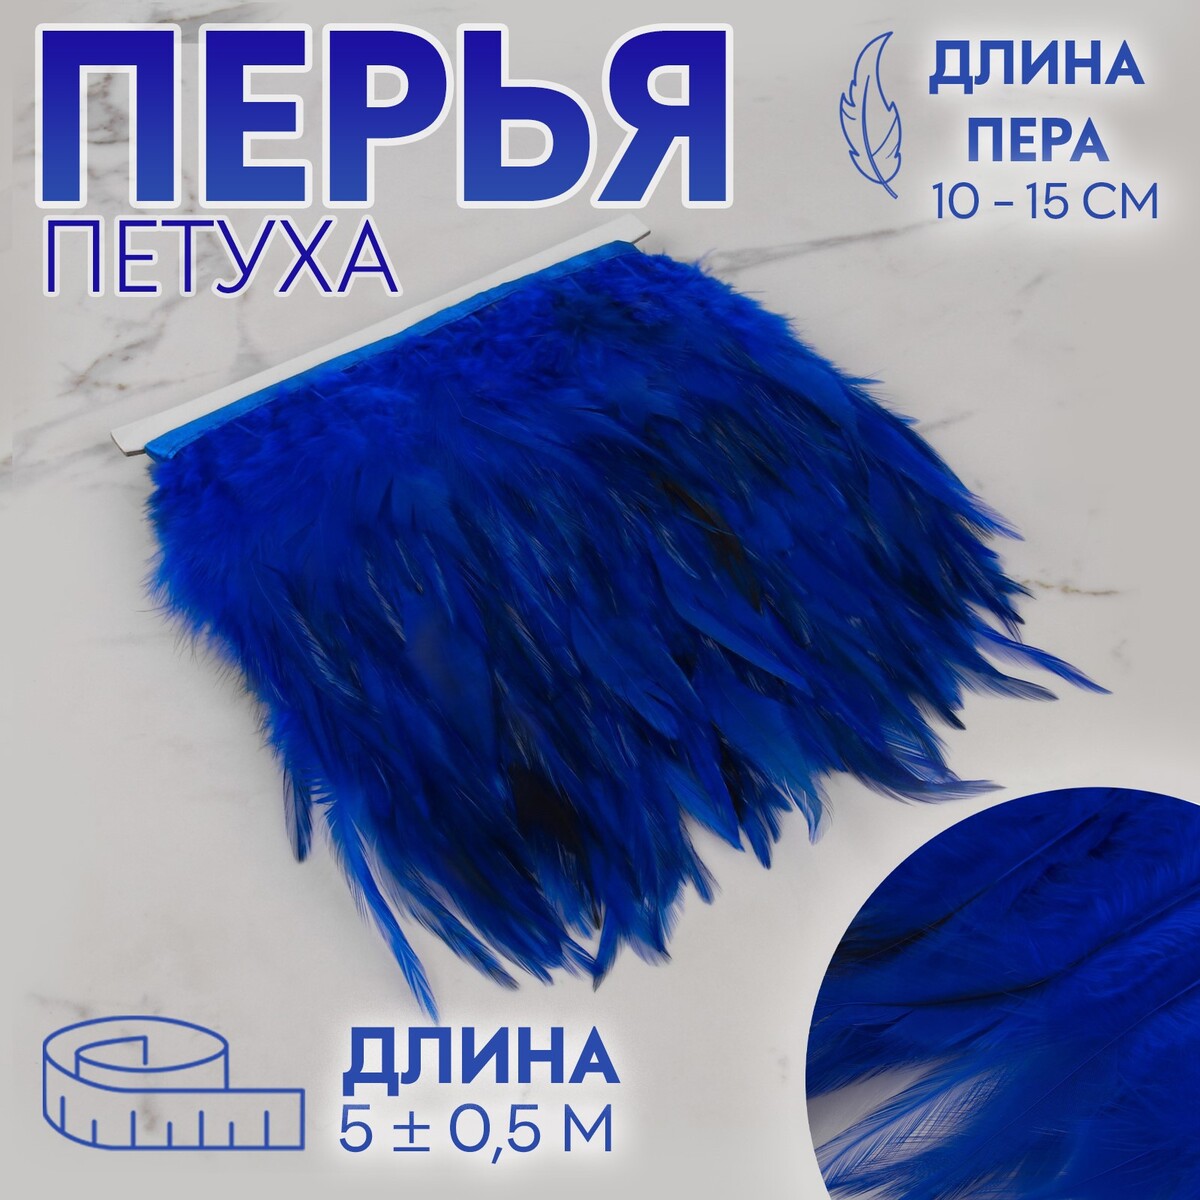 Тесьма с перьями петуха, 10-15 см, 5 ± 0,5 м, цвет синий тесьма с перьями петуха 10 15 см 5 ± 0 5 м серый